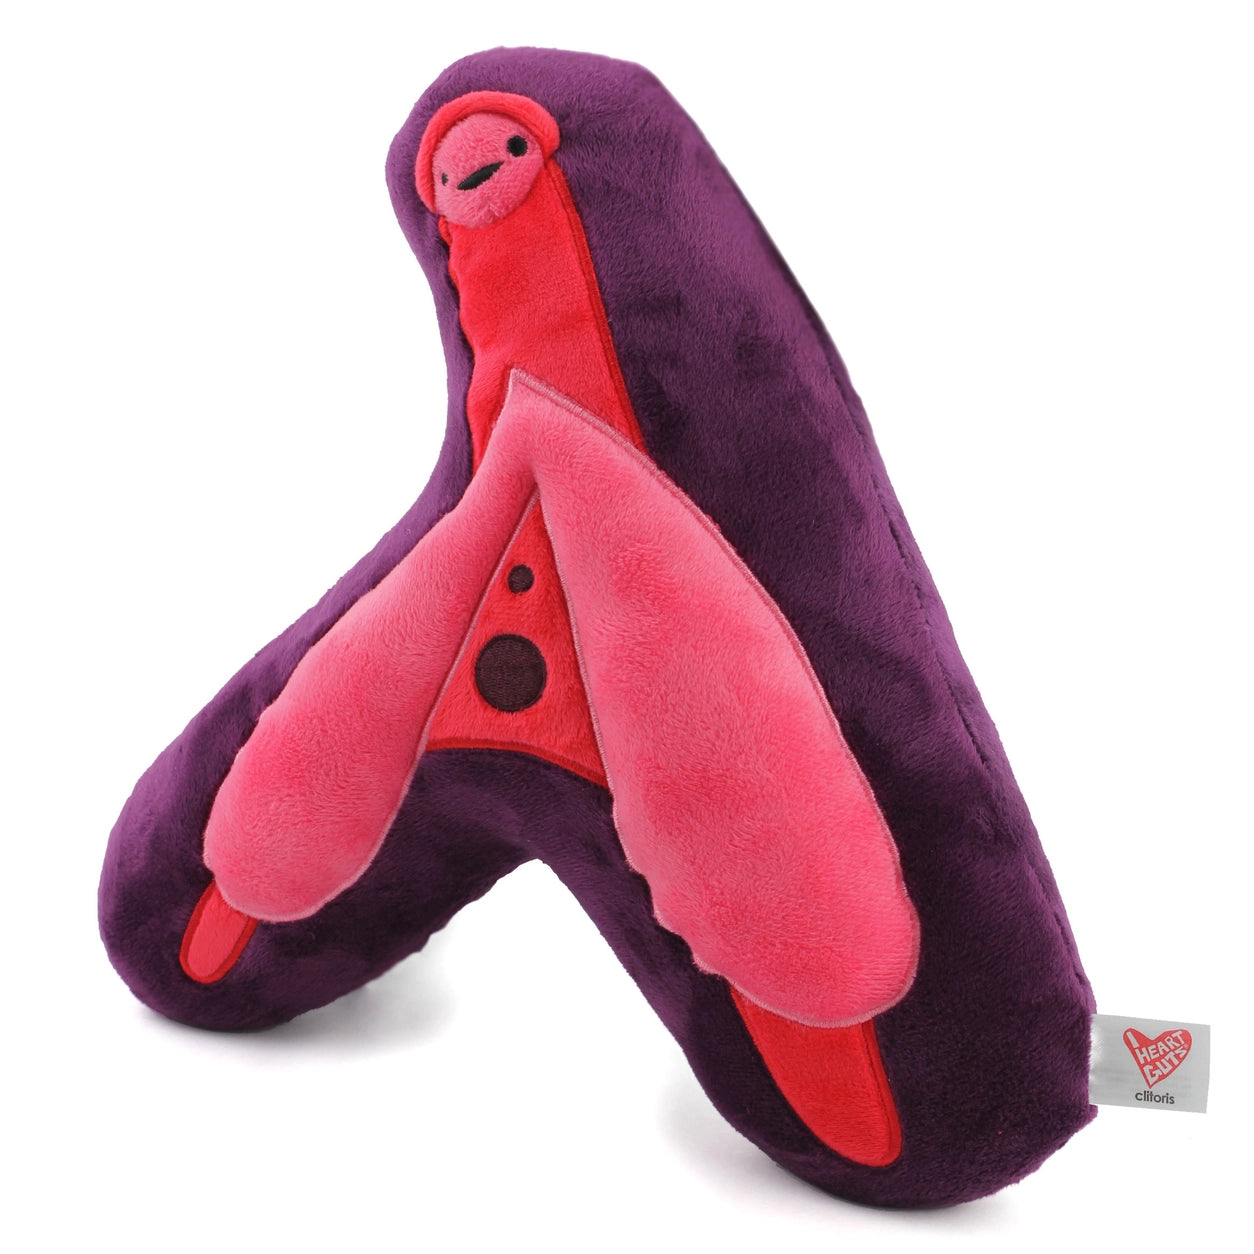 plushie clitoris - Enjoy Your Clitoris